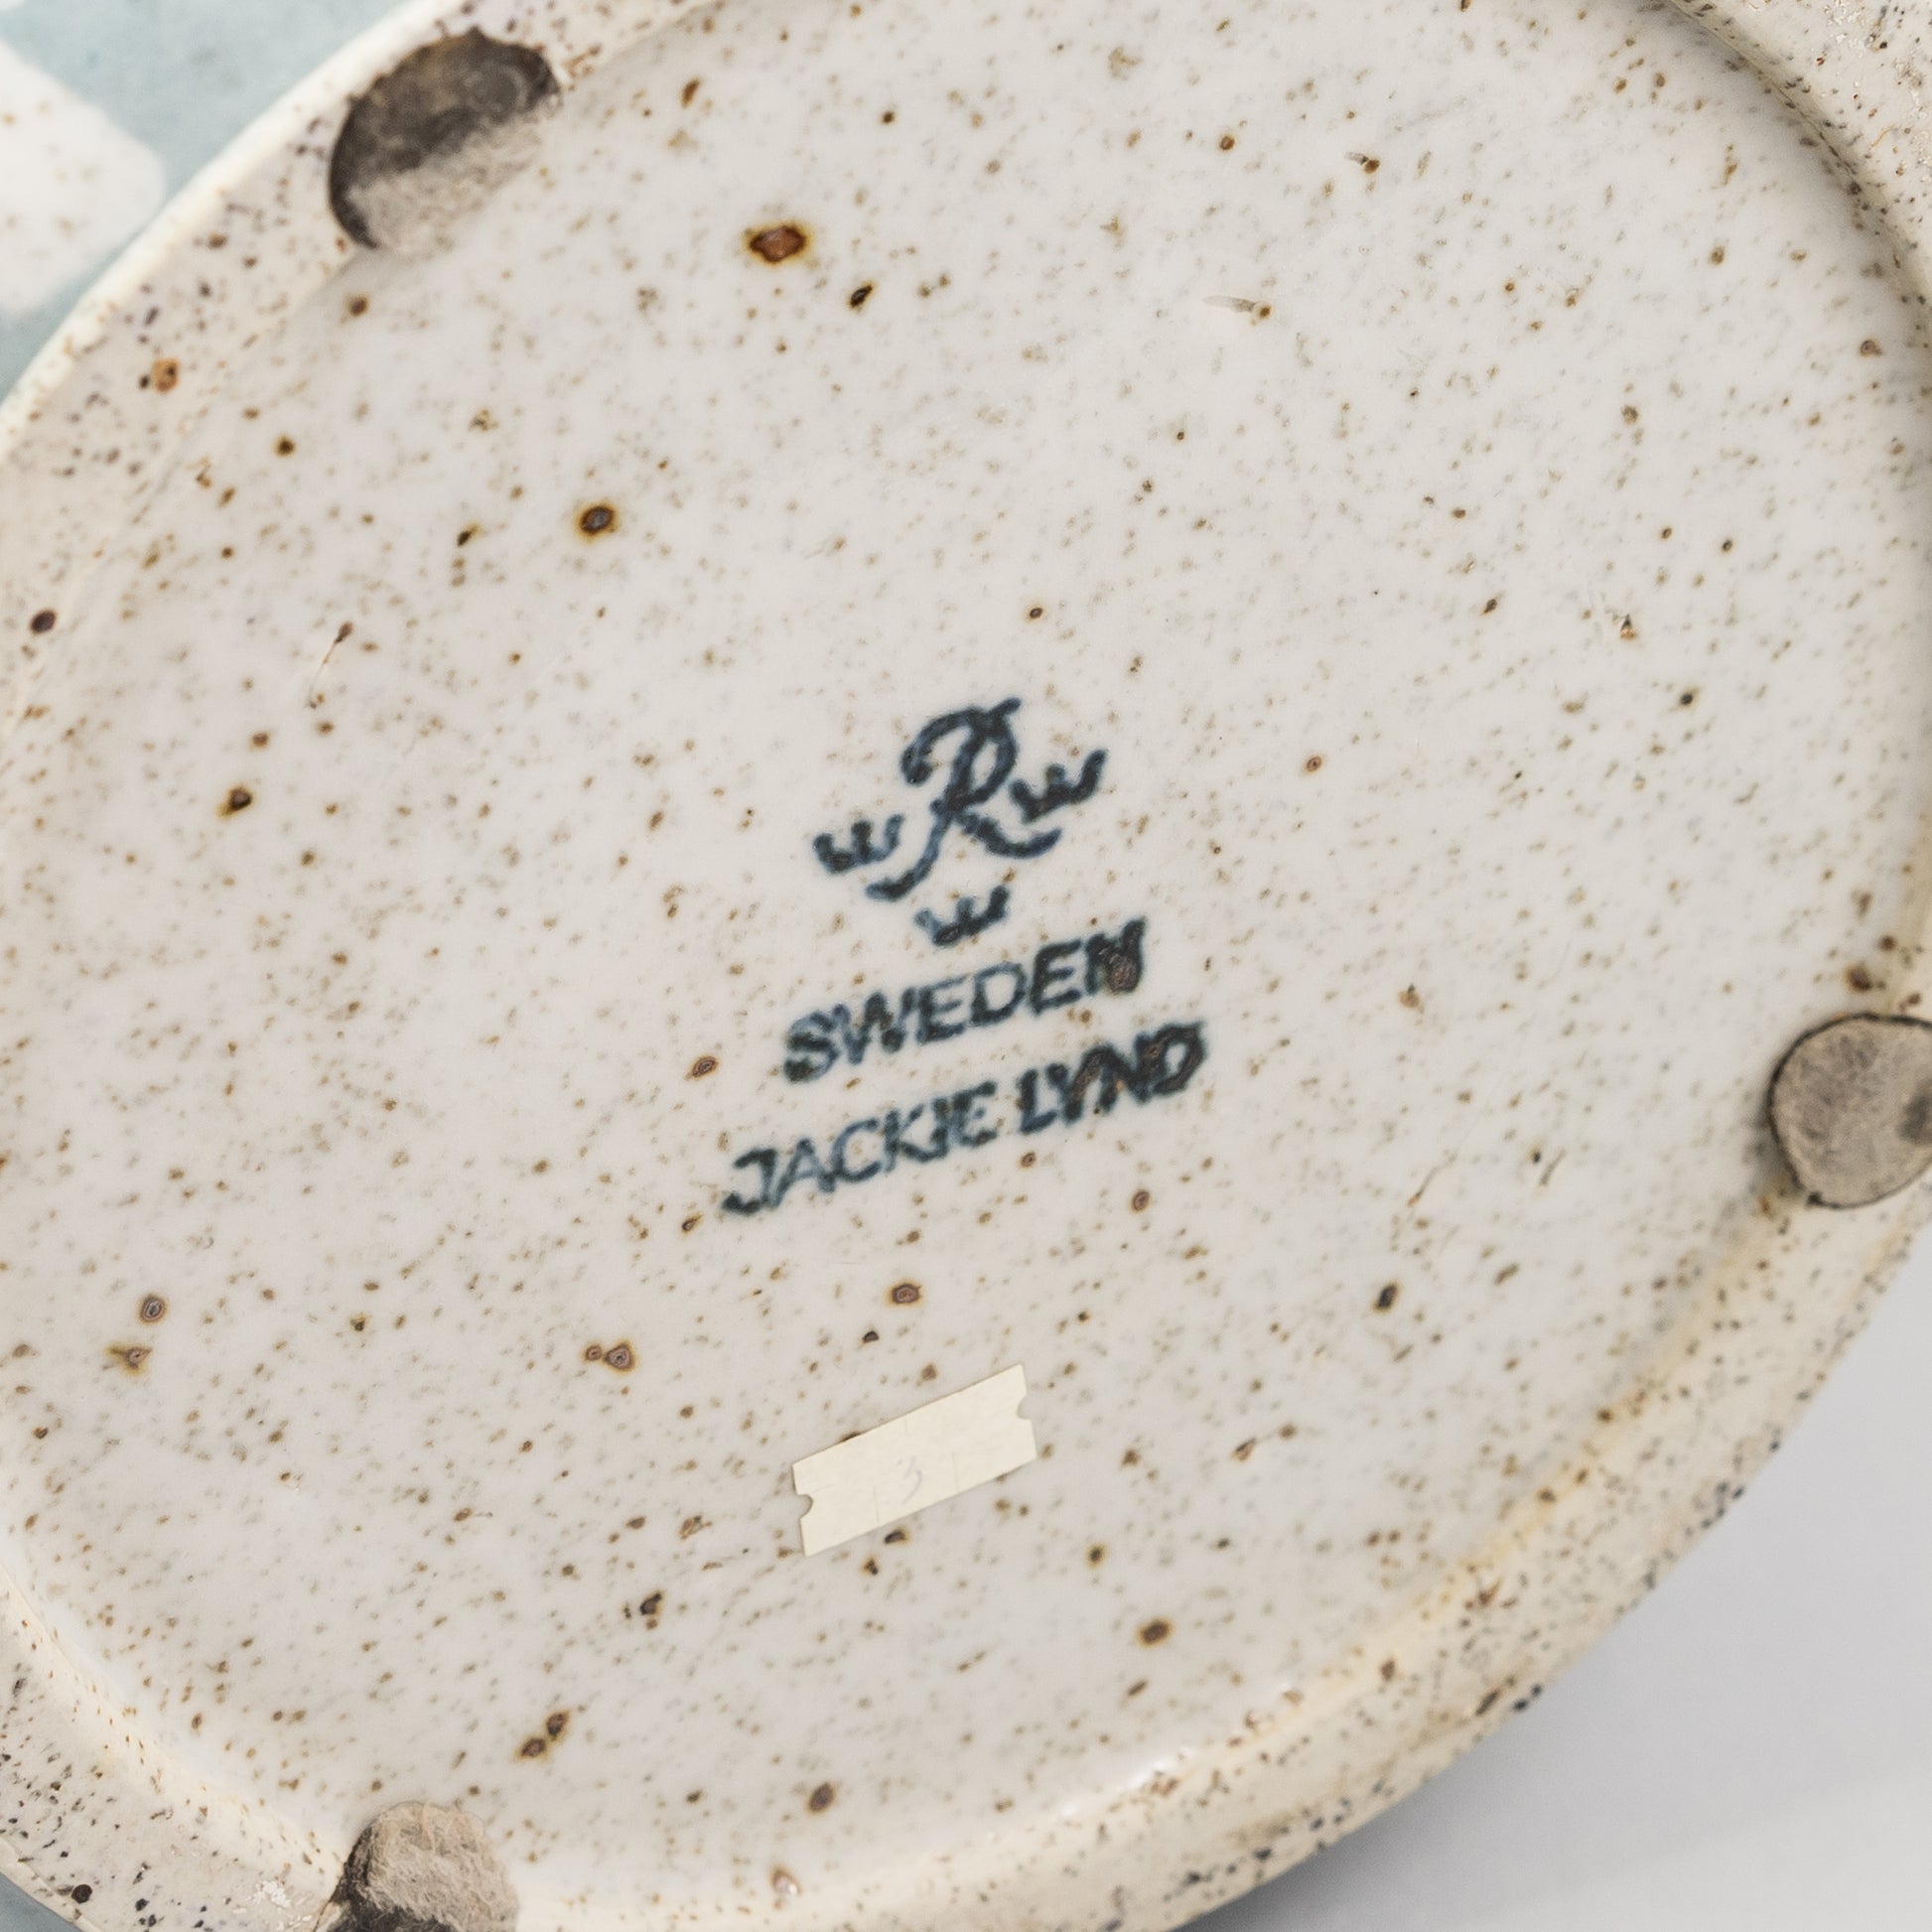 Ytterfoder, i stengods, av Jackie Lynd för Rörstrand. 23,5cm högt och diam. 27cm. Signerad R SWEDEN JACKIE LYND Stoneware flowerpot by Jackie Lynd for Rörstrand. H: 23,5cm/9,3" and diam. 27cm/10,6". Signed R SWEDEN JACKIE LYND